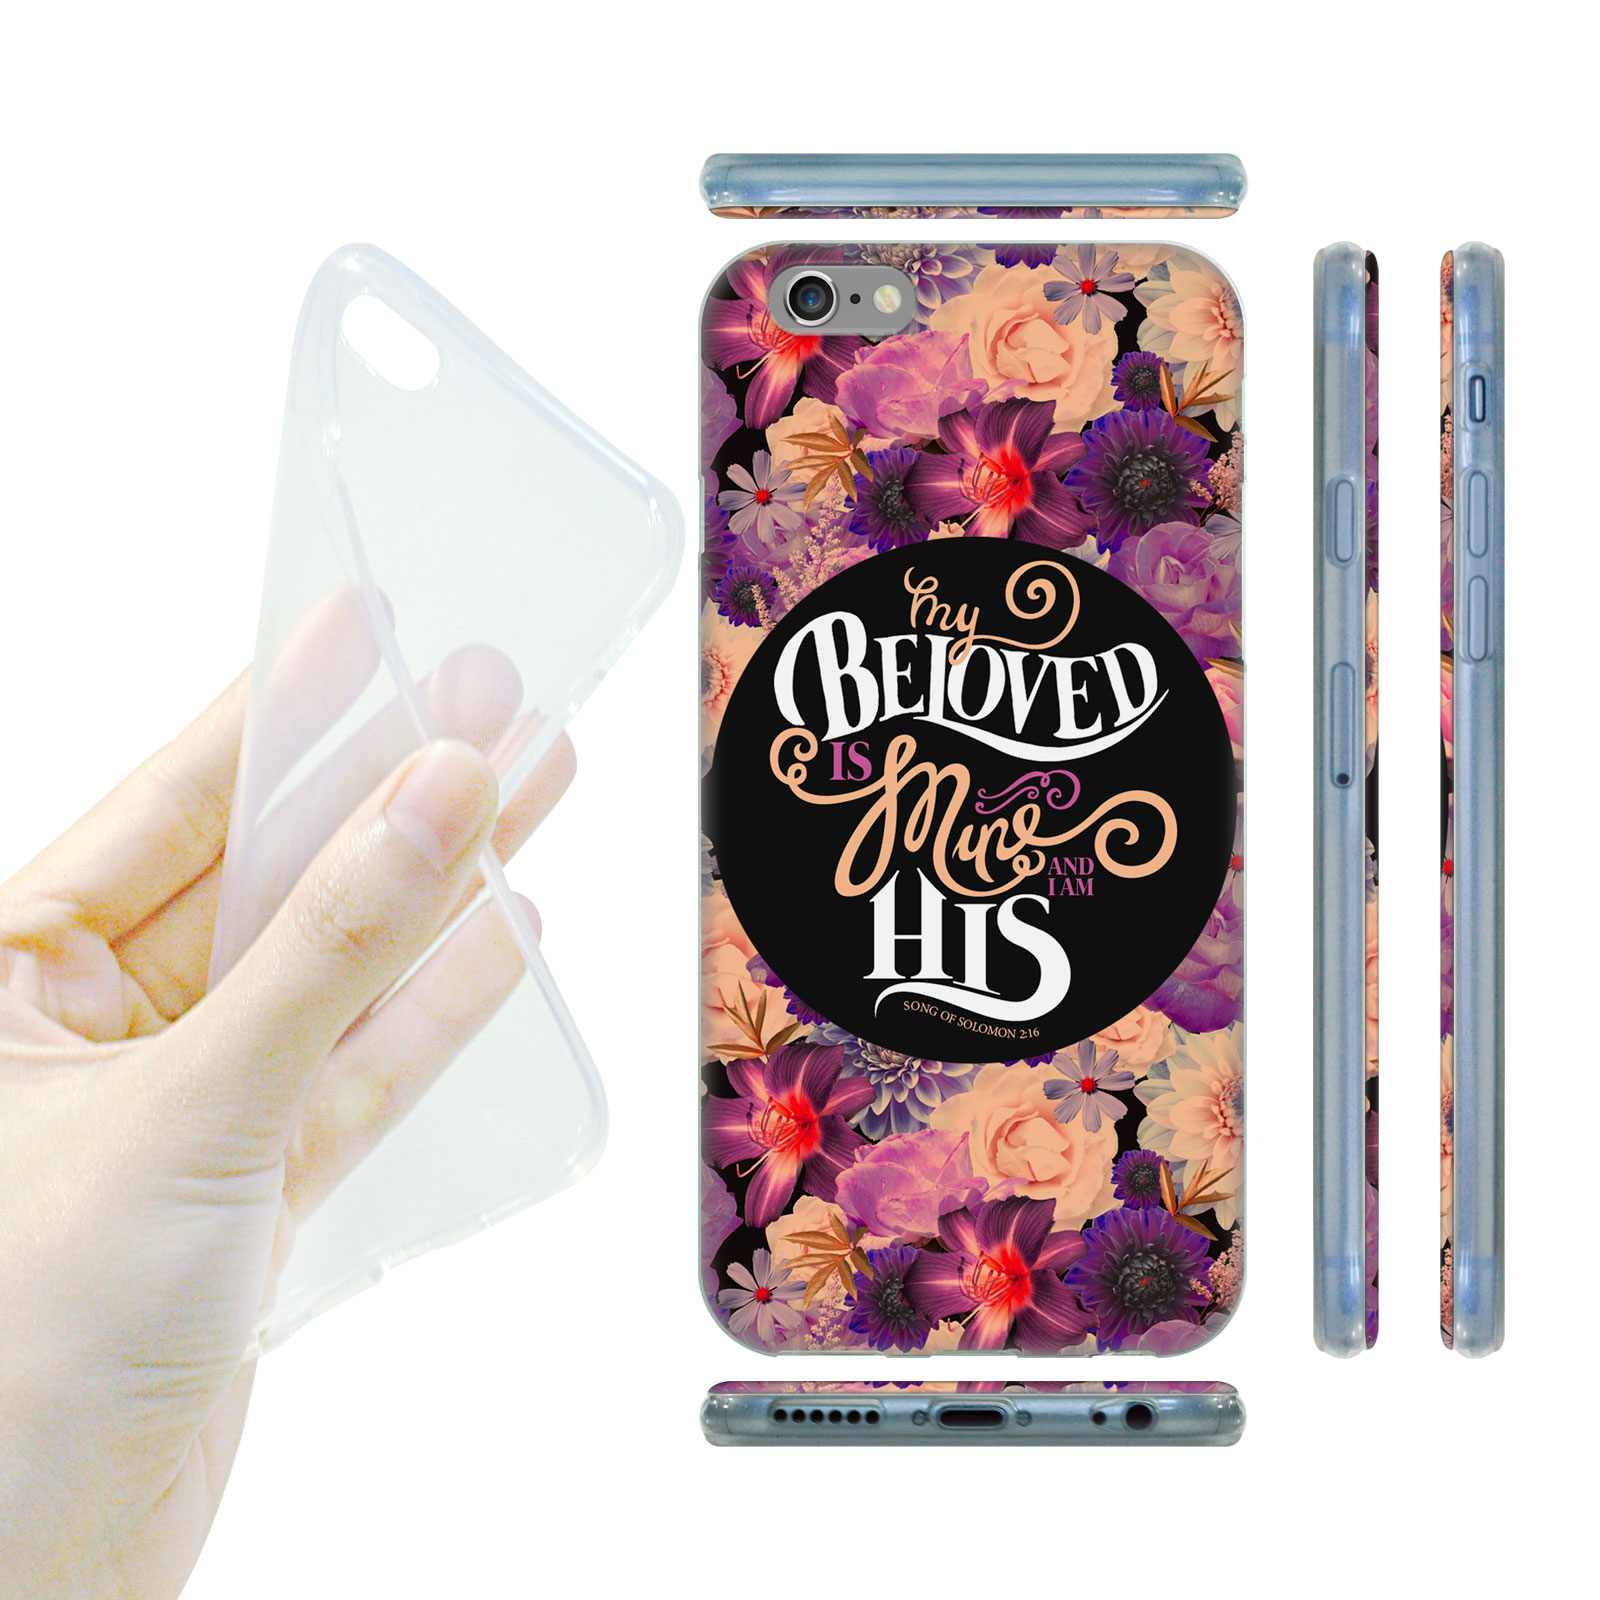 HEAD CASE silikonový obal na mobil Iphone 6/6S krásné květy fialová BELOVED